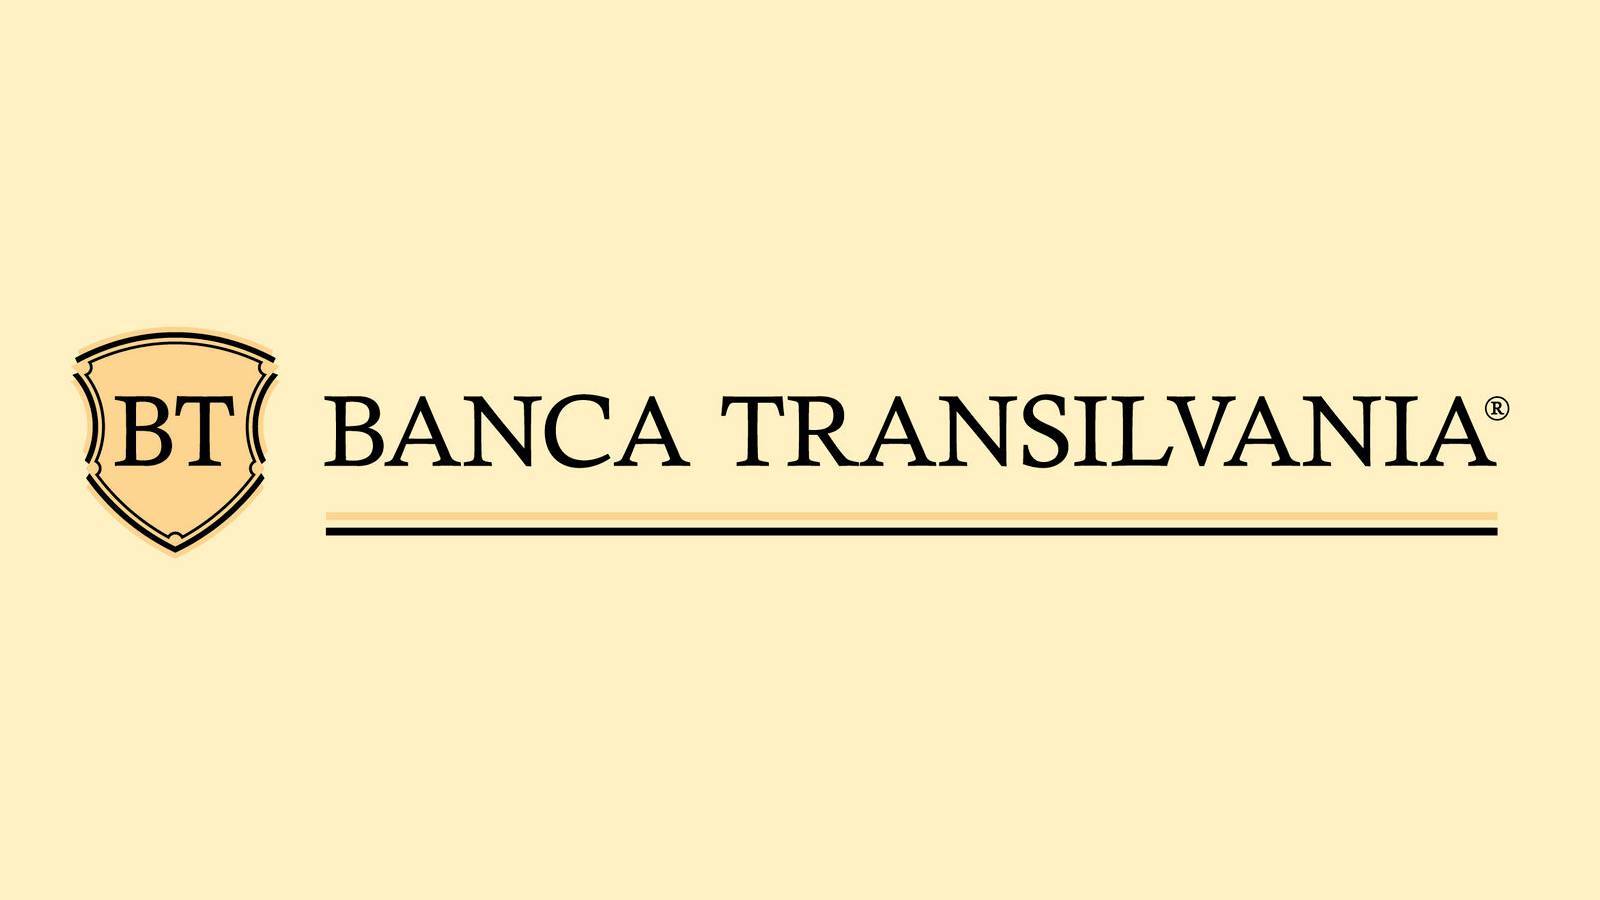 BANCA Transilvania Informations IMPORTANTES délivrées aux clients que vous devez connaître aujourd'hui